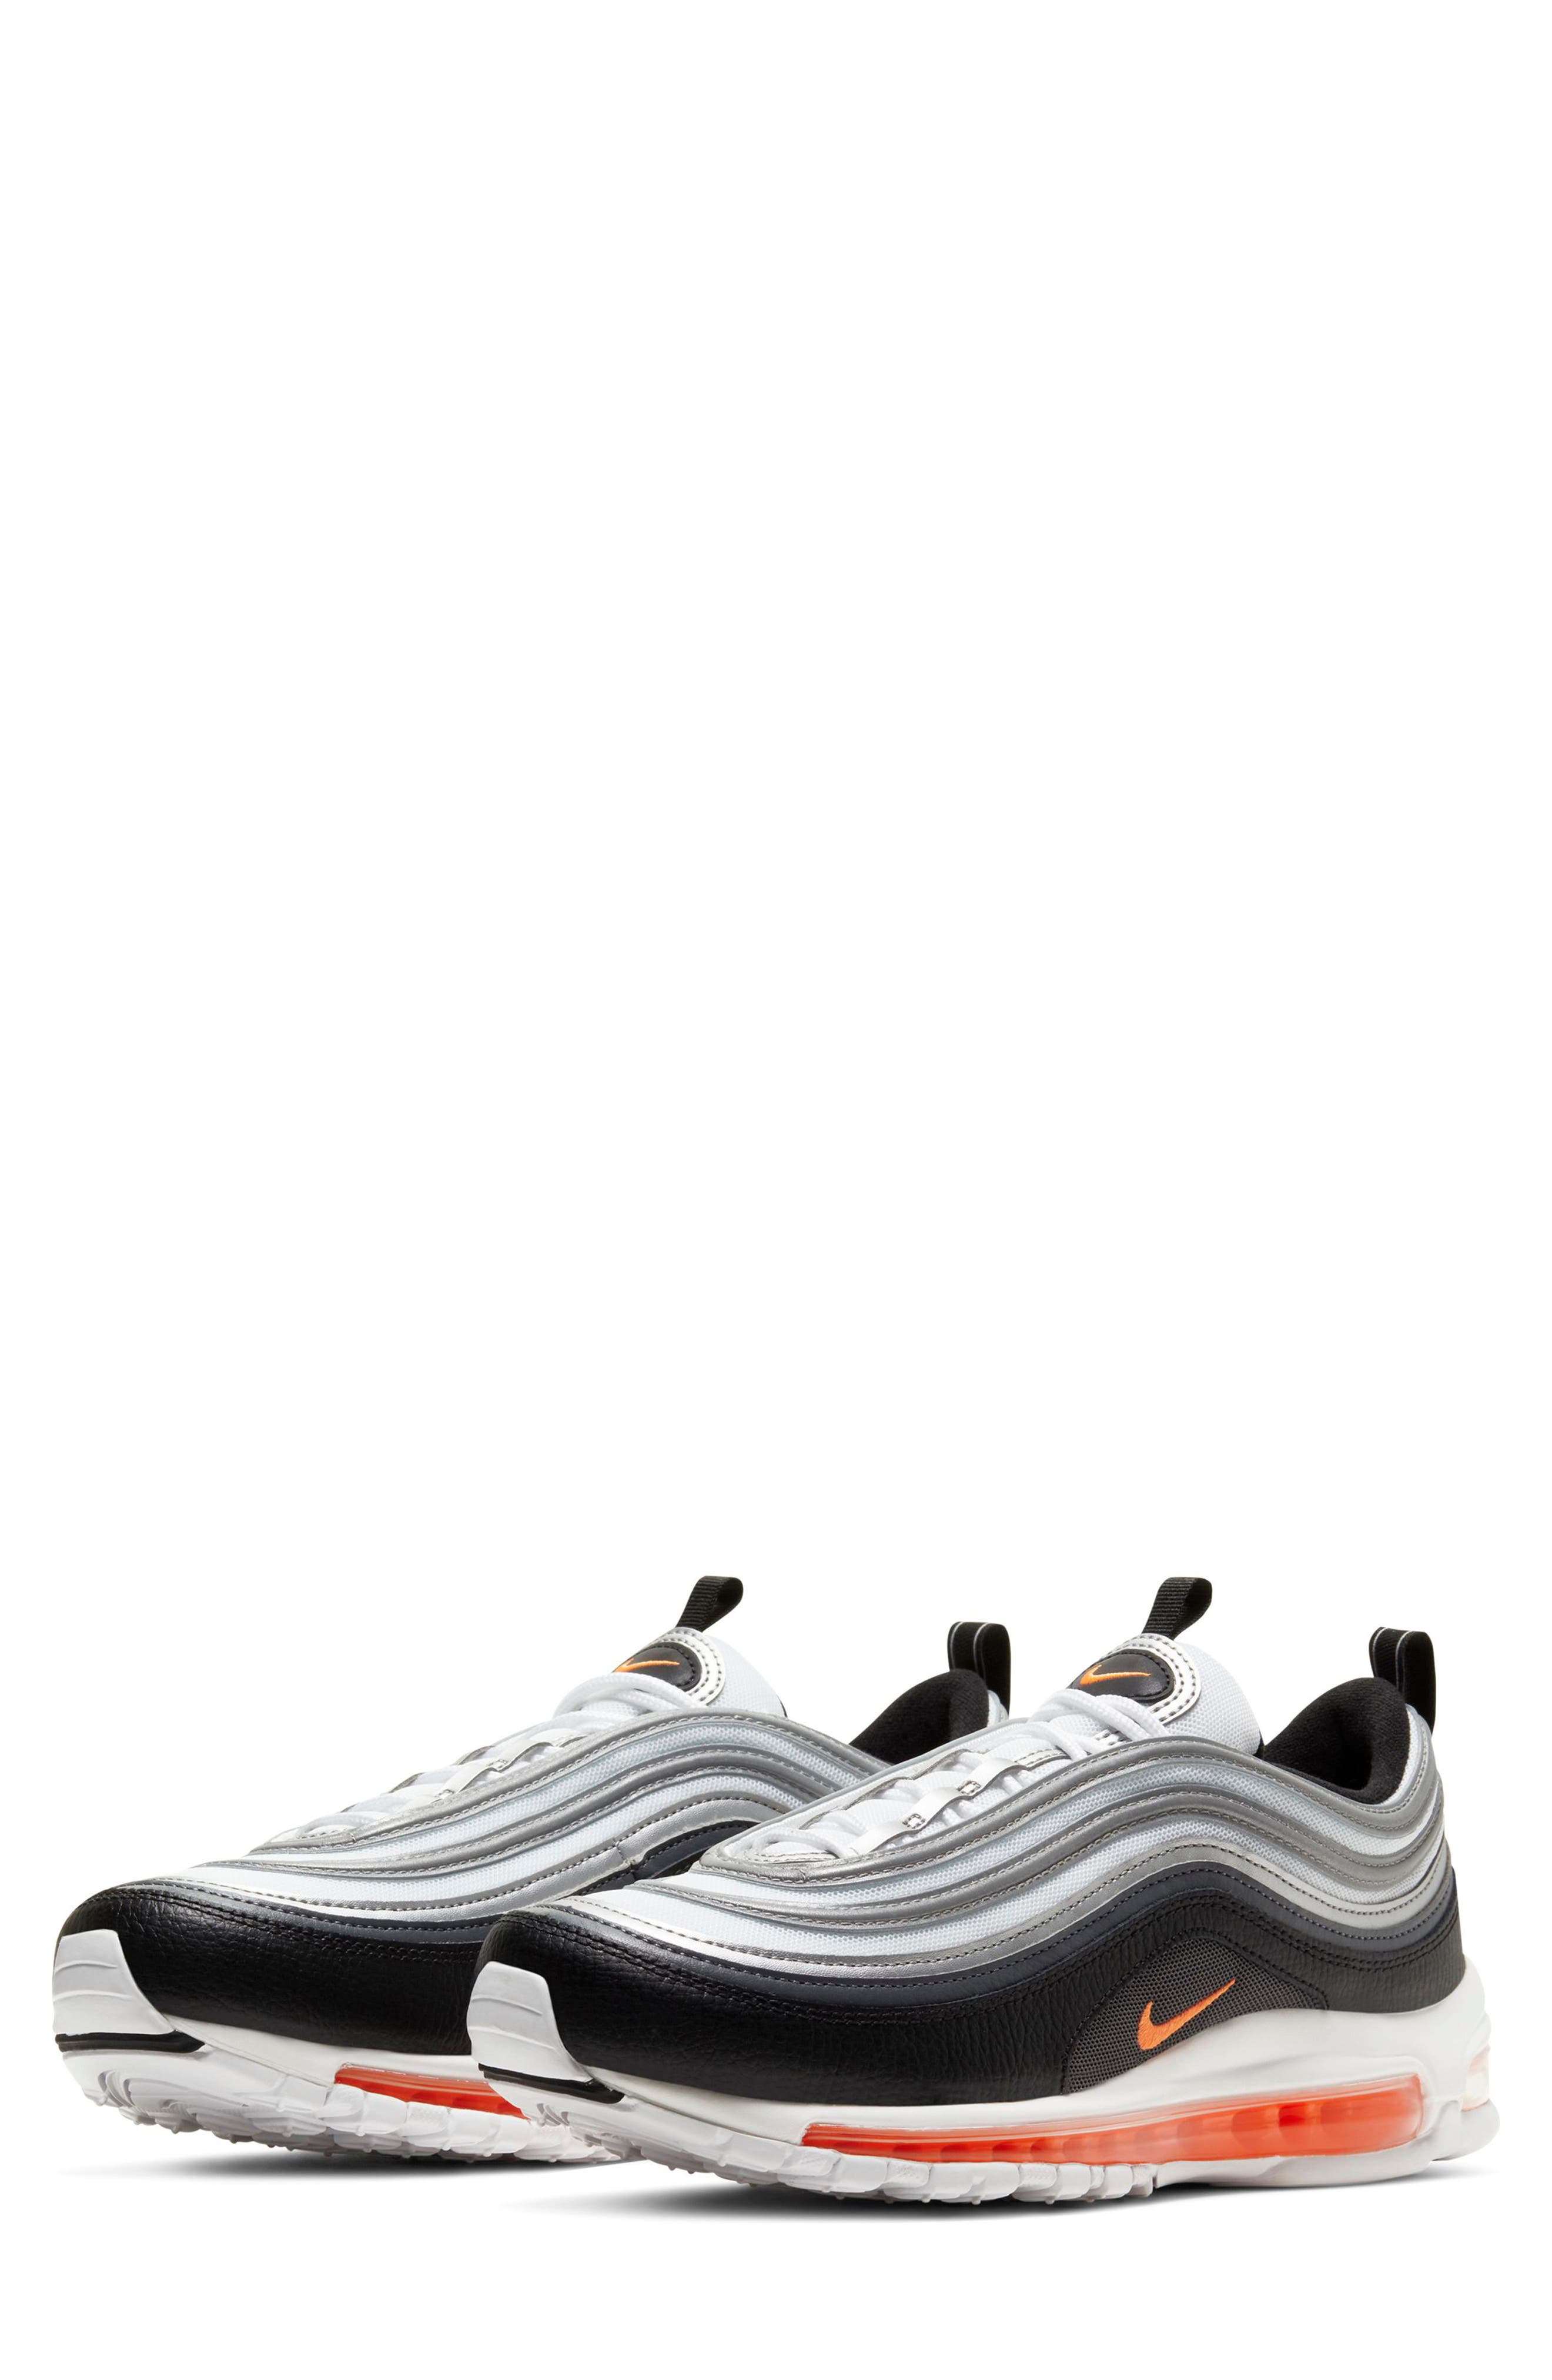 Men's Nike Air Max 97 Sneaker, Size 10 